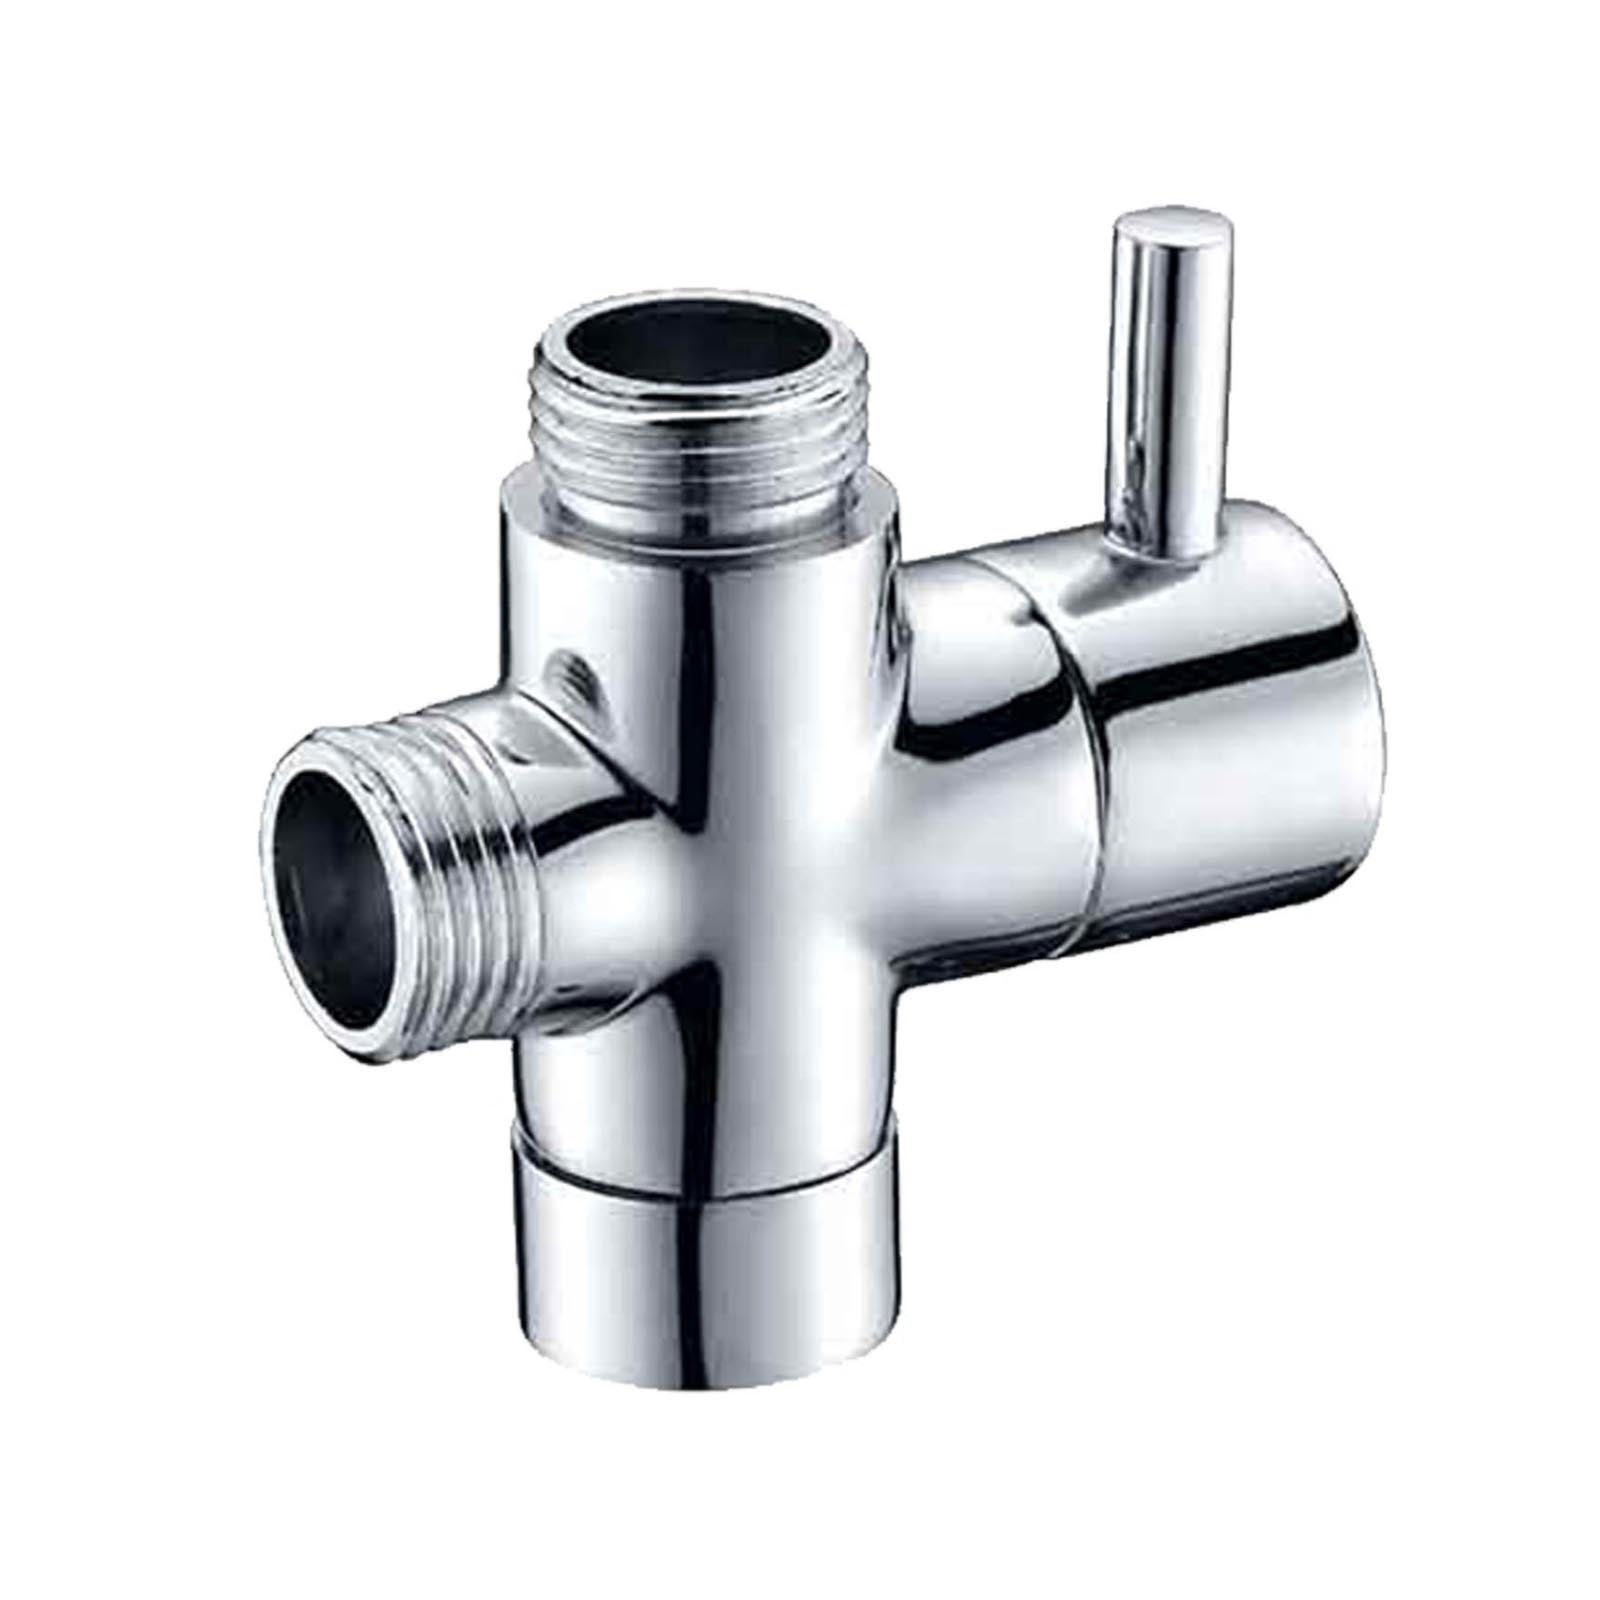 G1/2" End Diverter / Adaptor For Bathroom Toilet Bidet Or Shower Brass Chrome